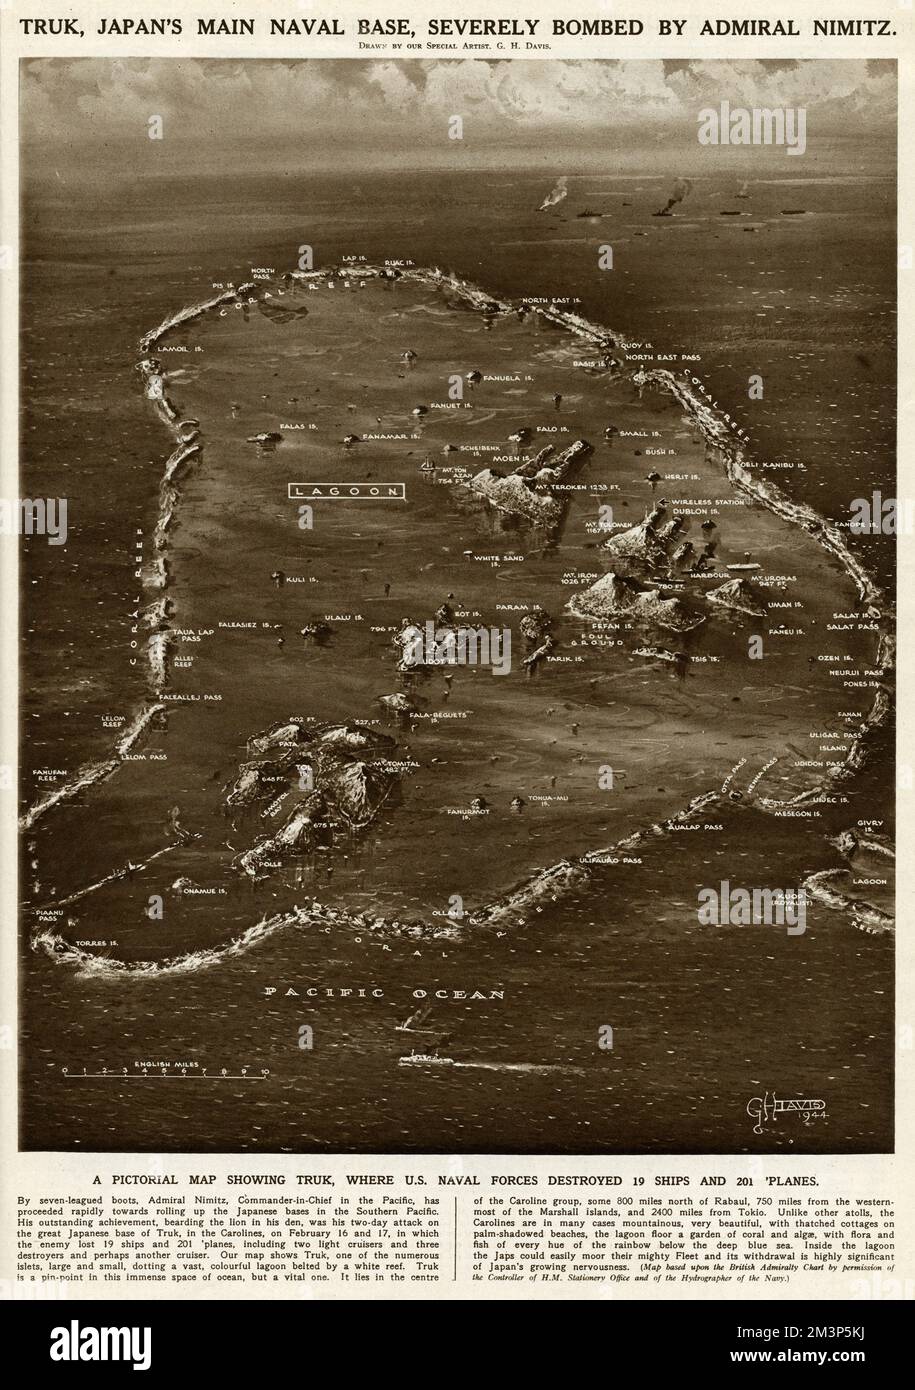 Une carte picturale de Truk, la principale base navale du Japon, sévèrement bombardée par l'amiral Nimitz, commandant en chef de la marine américaine dans le Pacifique, pendant la Seconde Guerre mondiale -- 19 navires et 201 avions ont été détruits. Banque D'Images